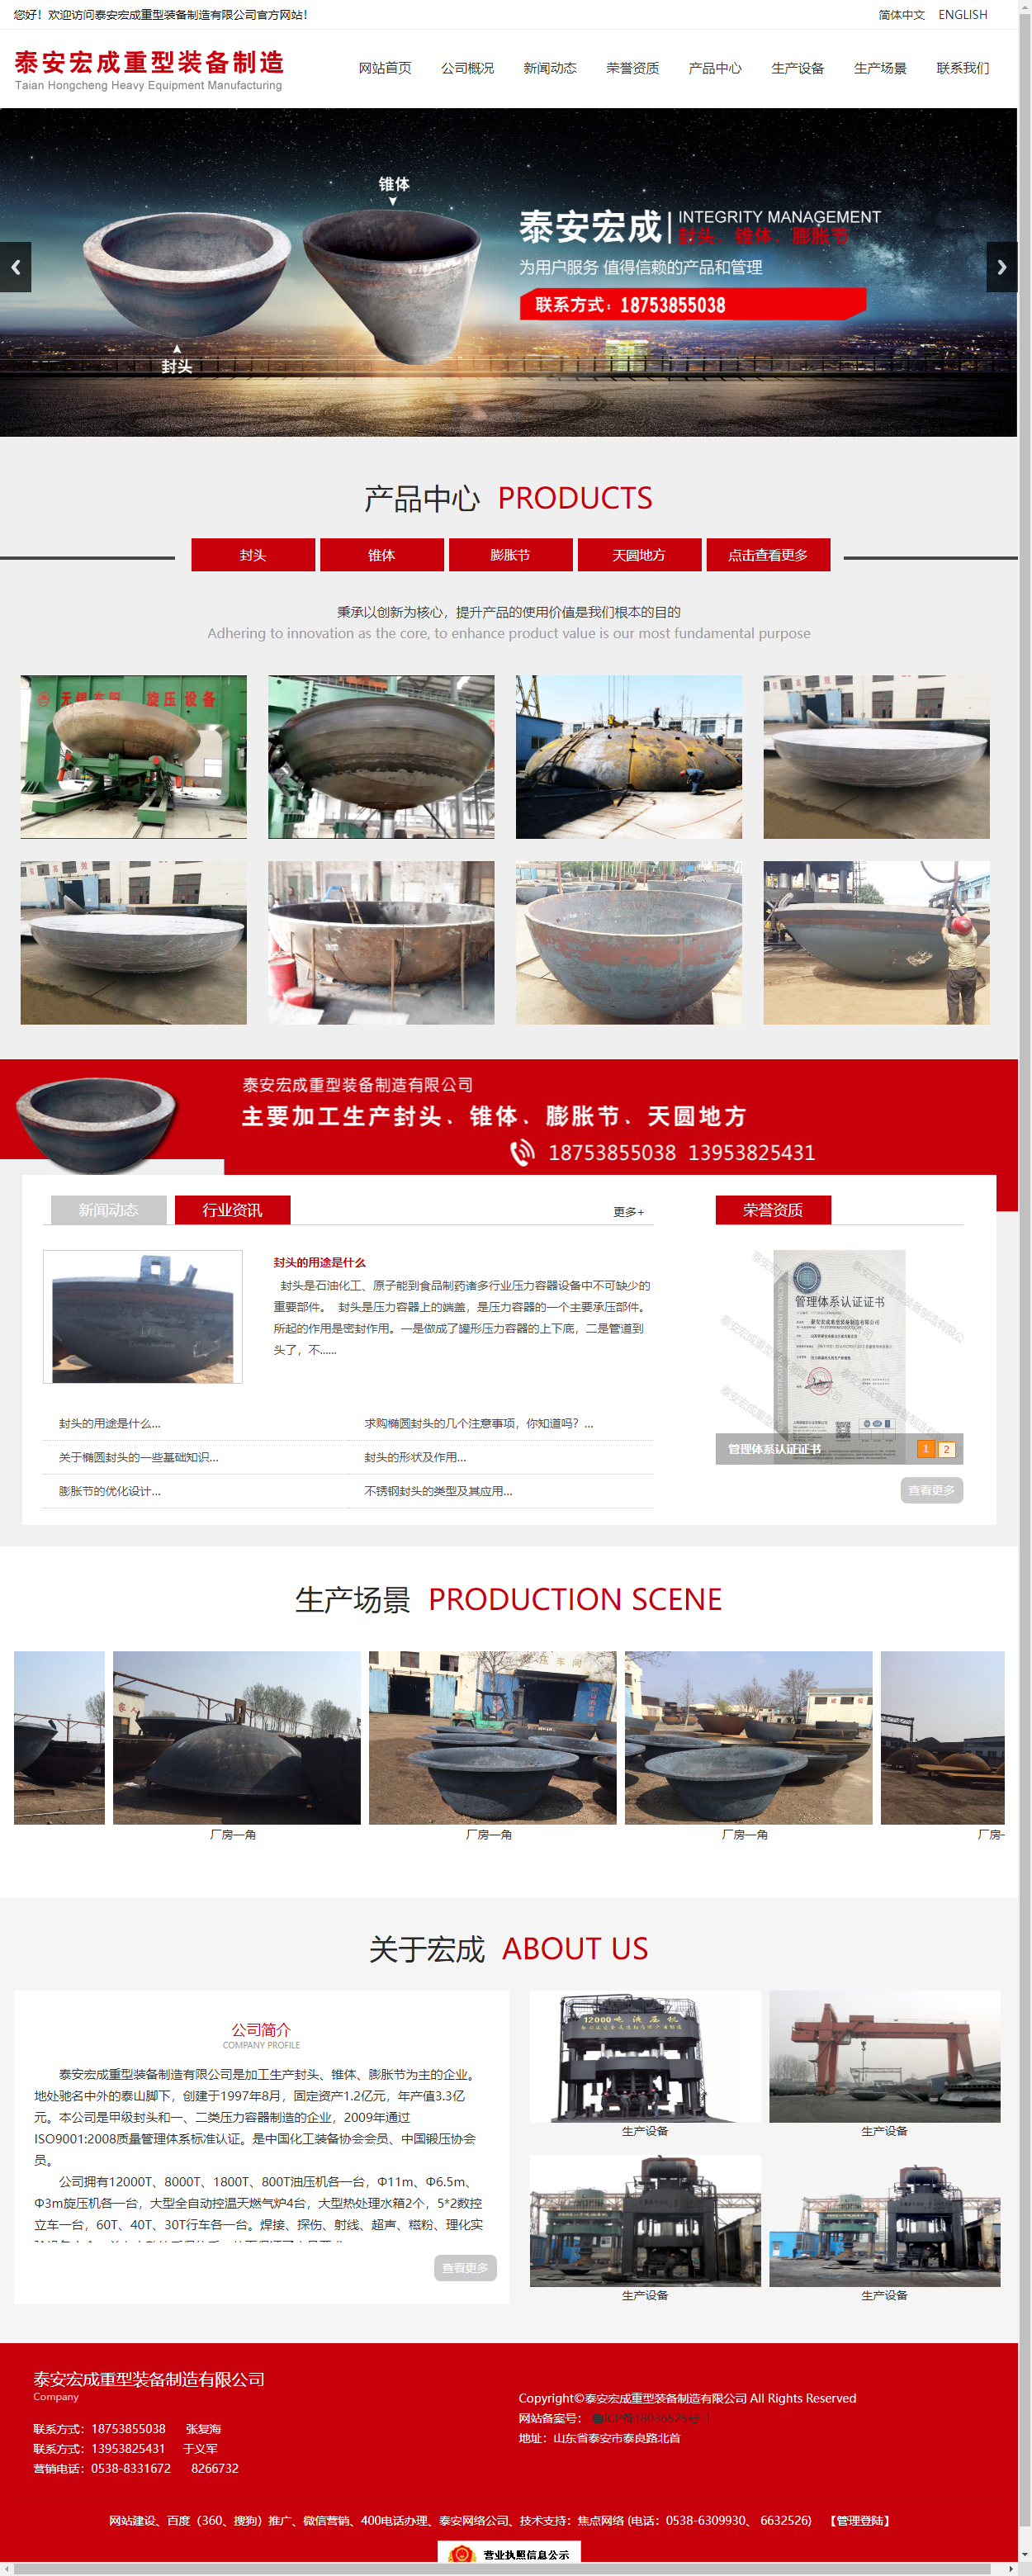 泰安宏成重型装备制造有限公司网站案例